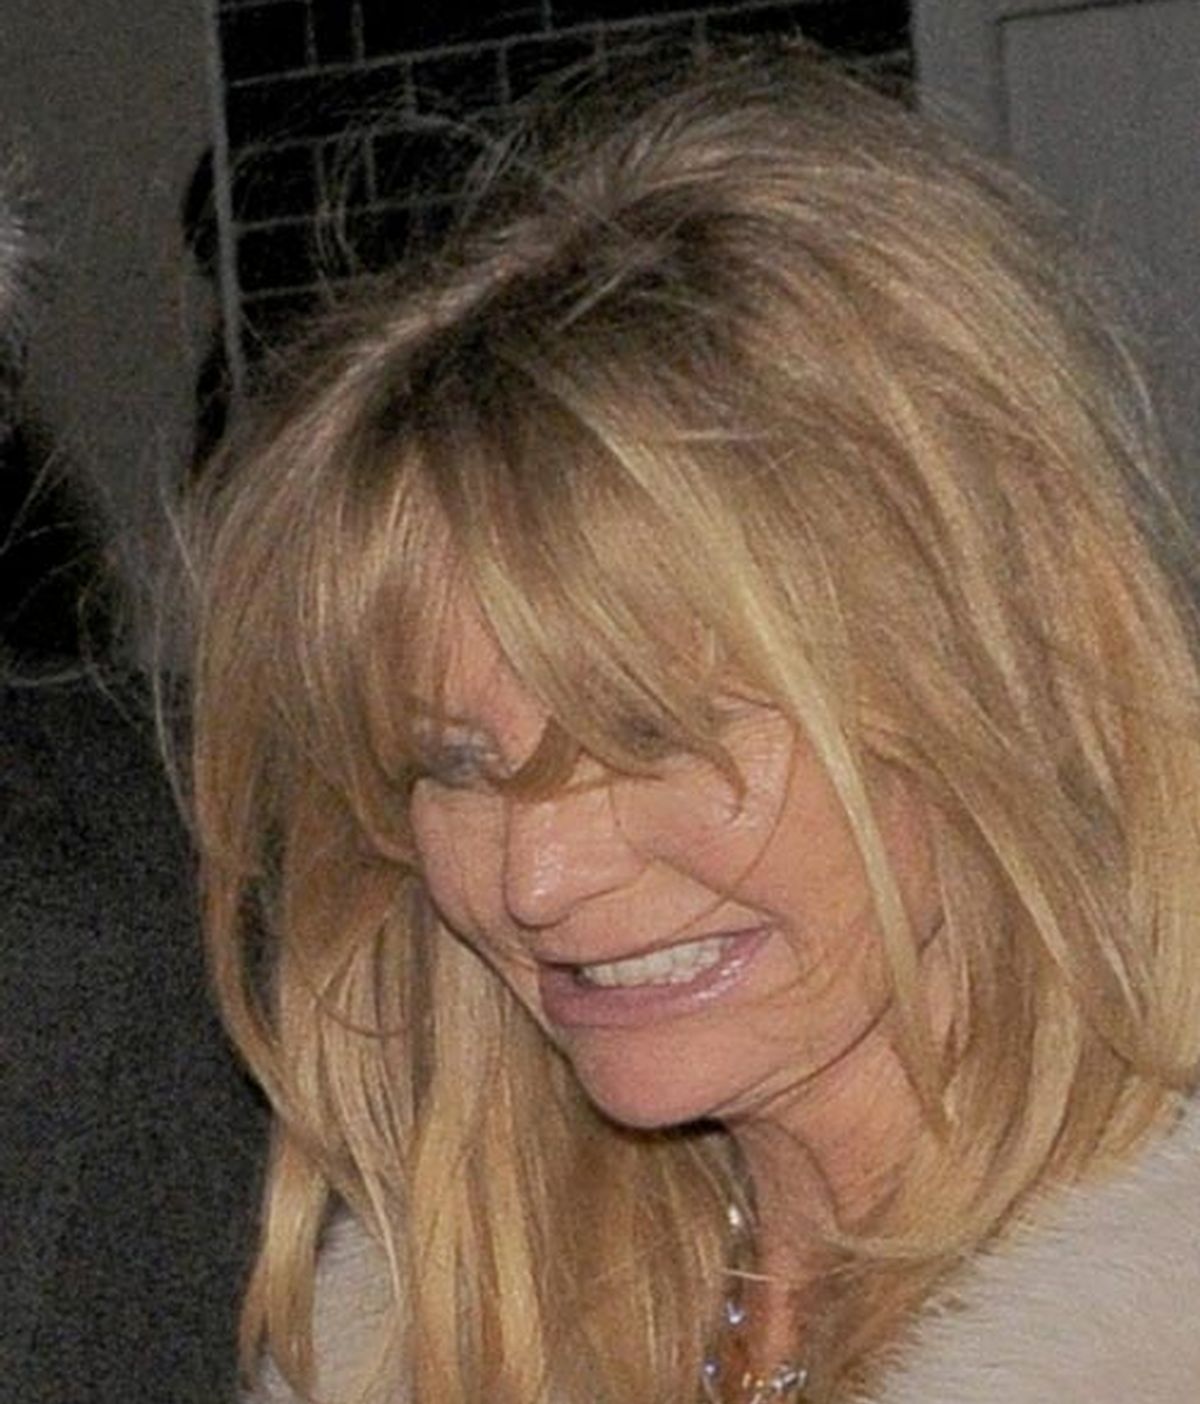 Goldie Hawn: Esta noche hay una... cena benéfica, vayamos todos a la cena benéfica